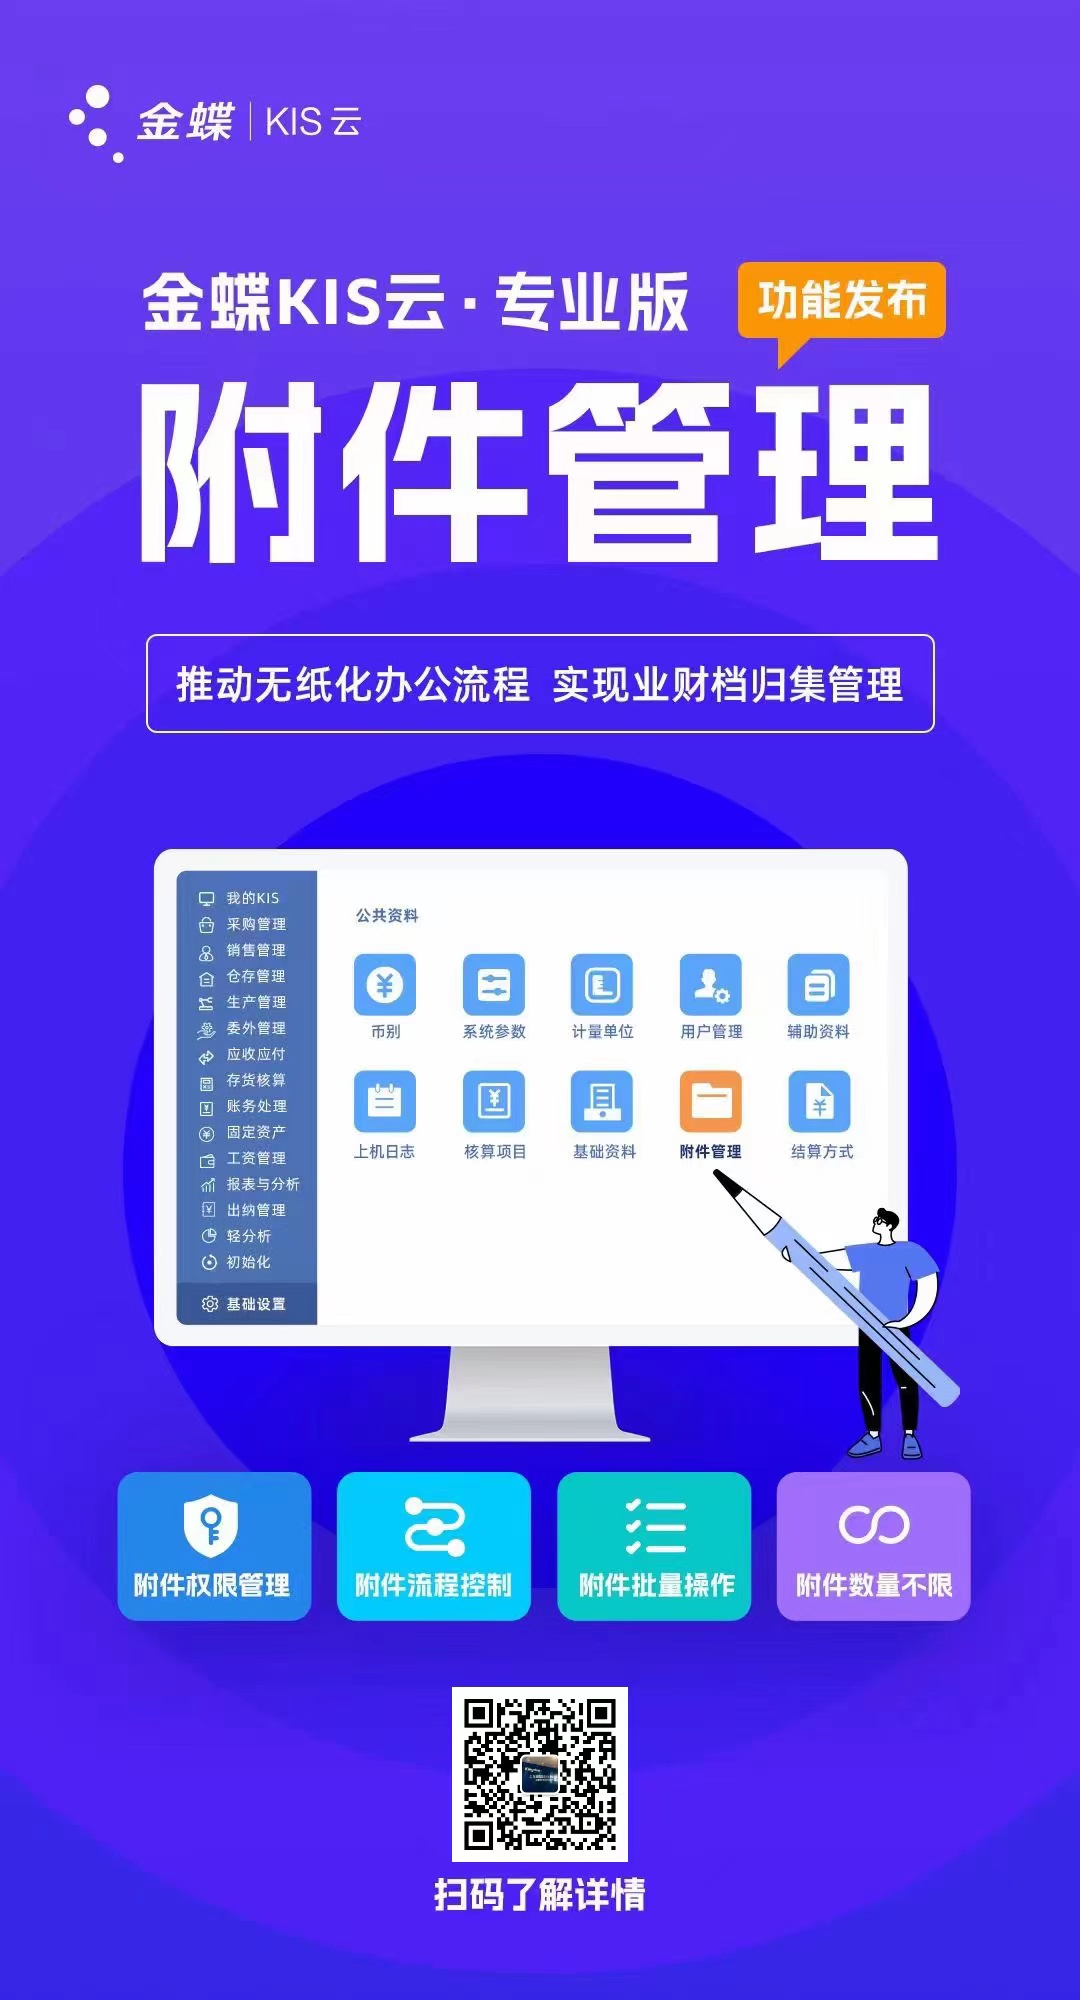 金蝶KIS云·专业版附件管理新功能发布